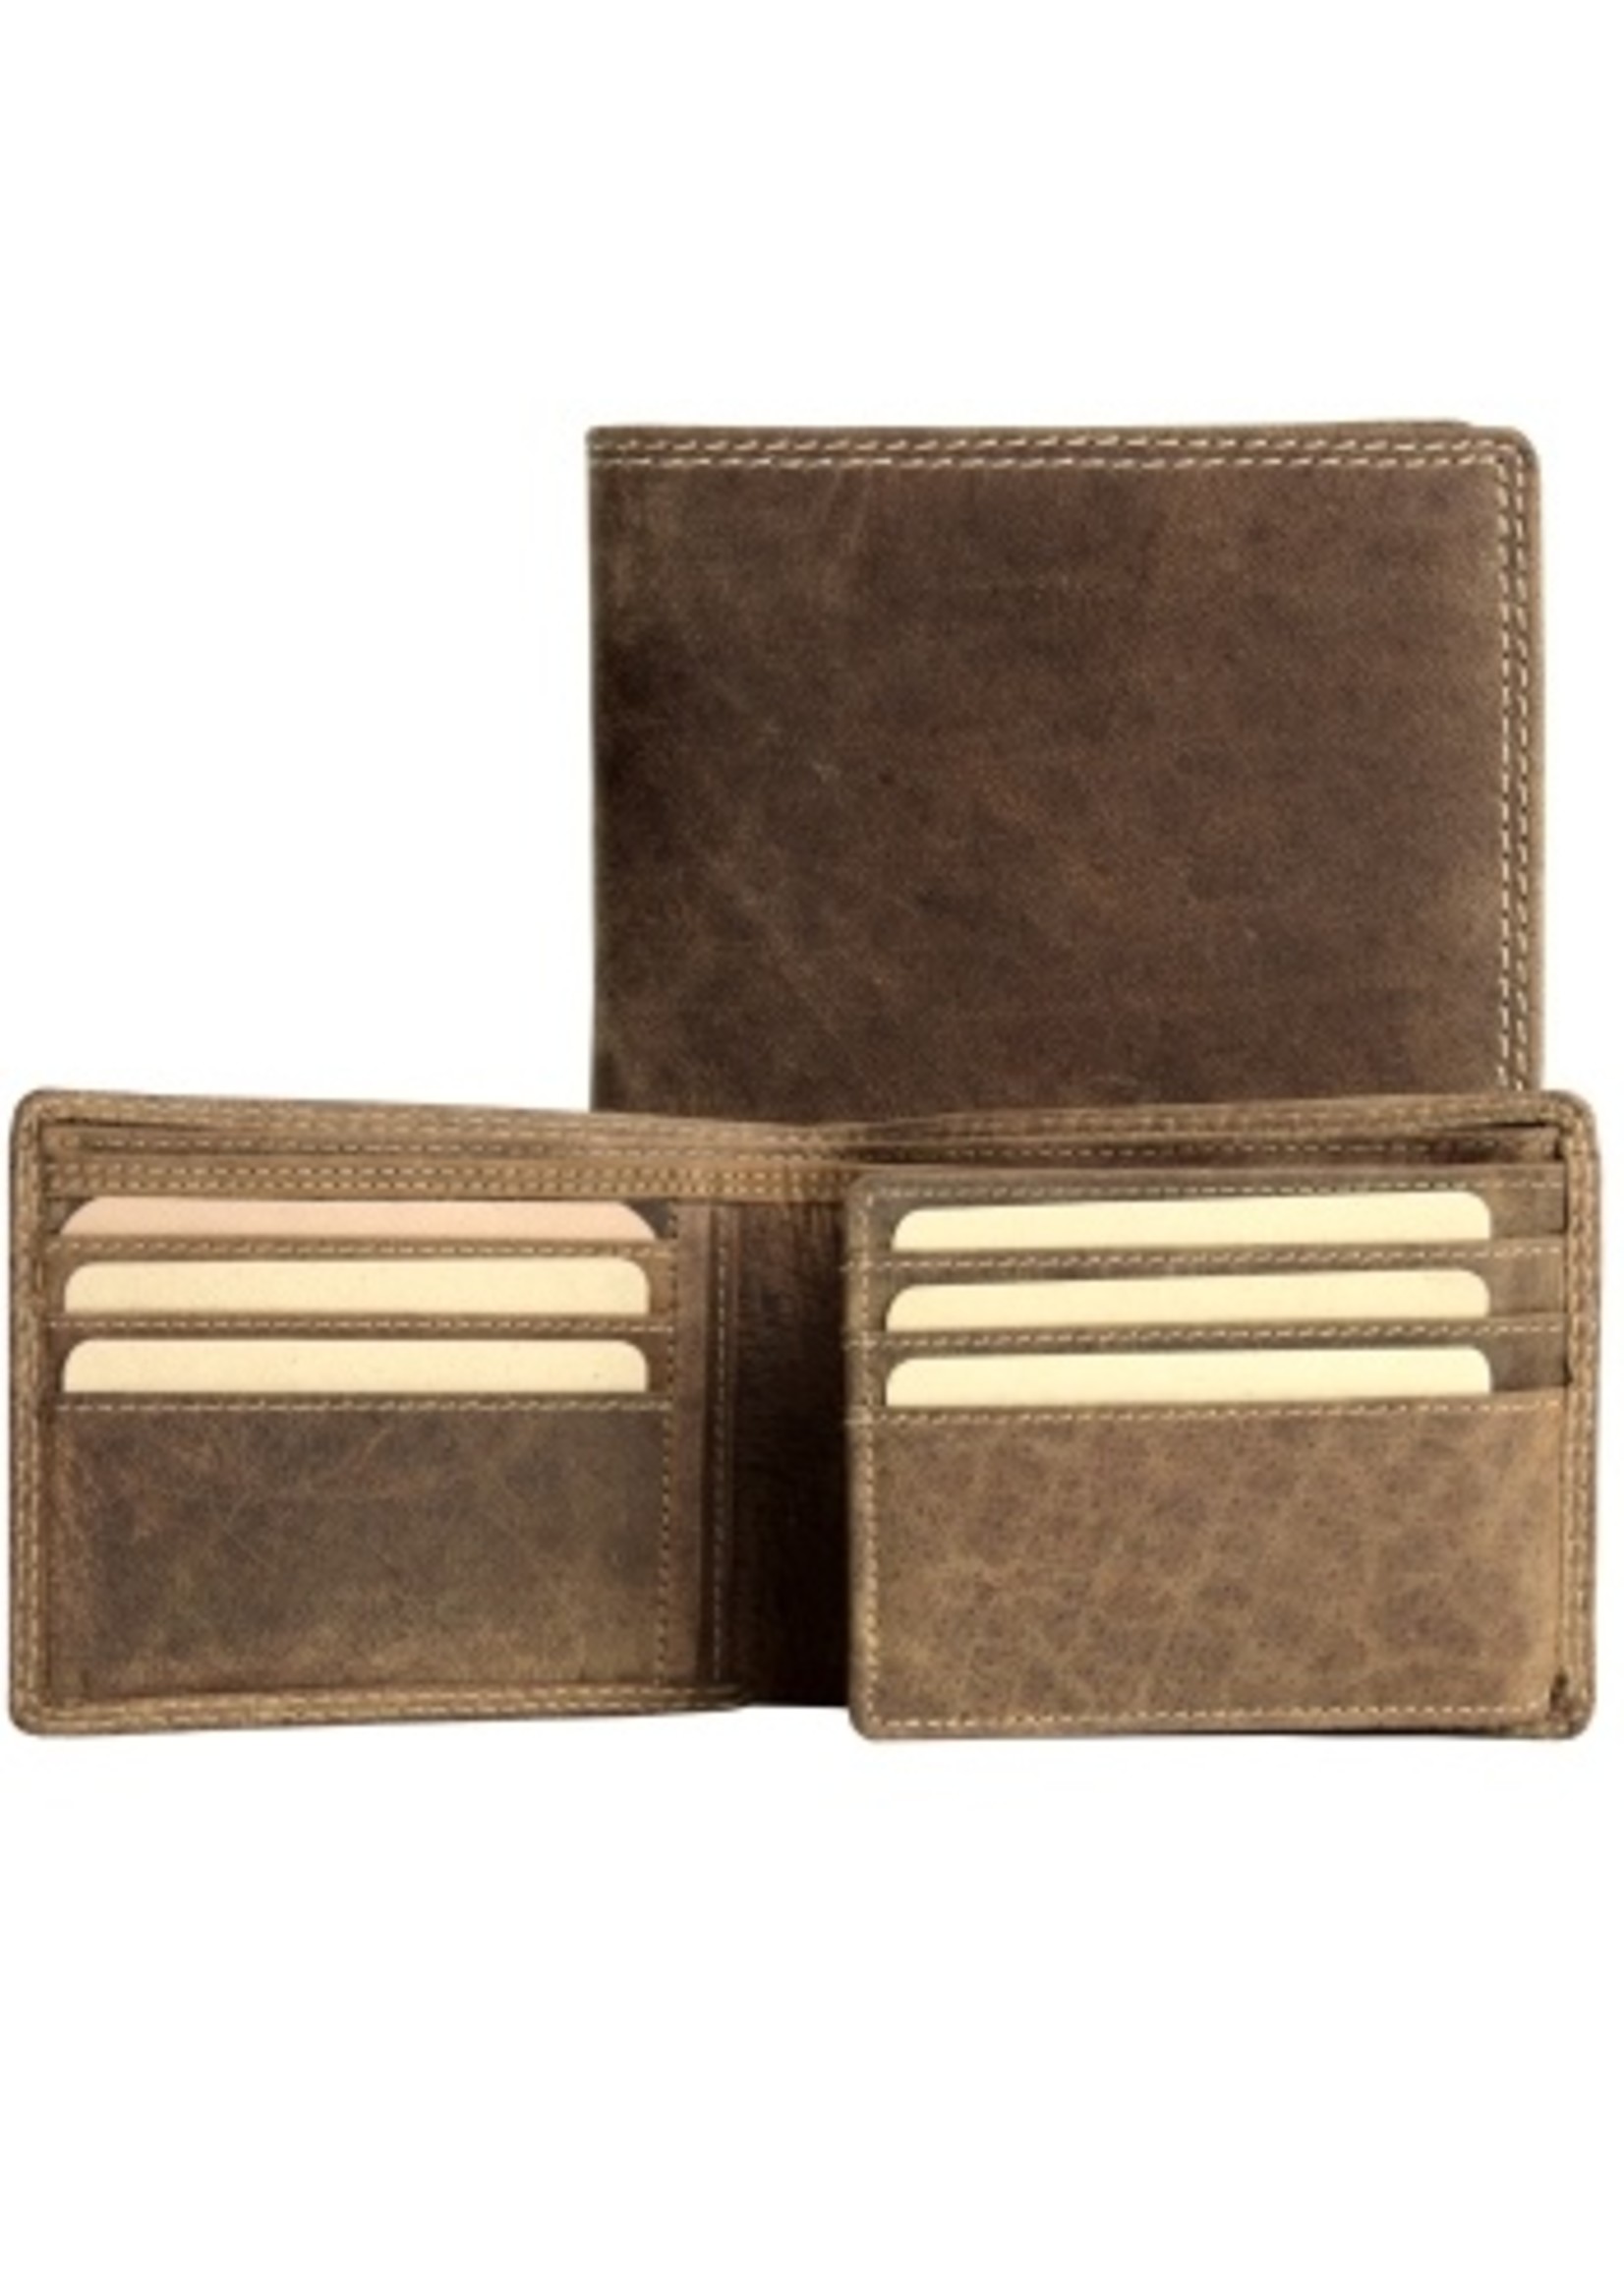 Adrian Klis Men's Wallet